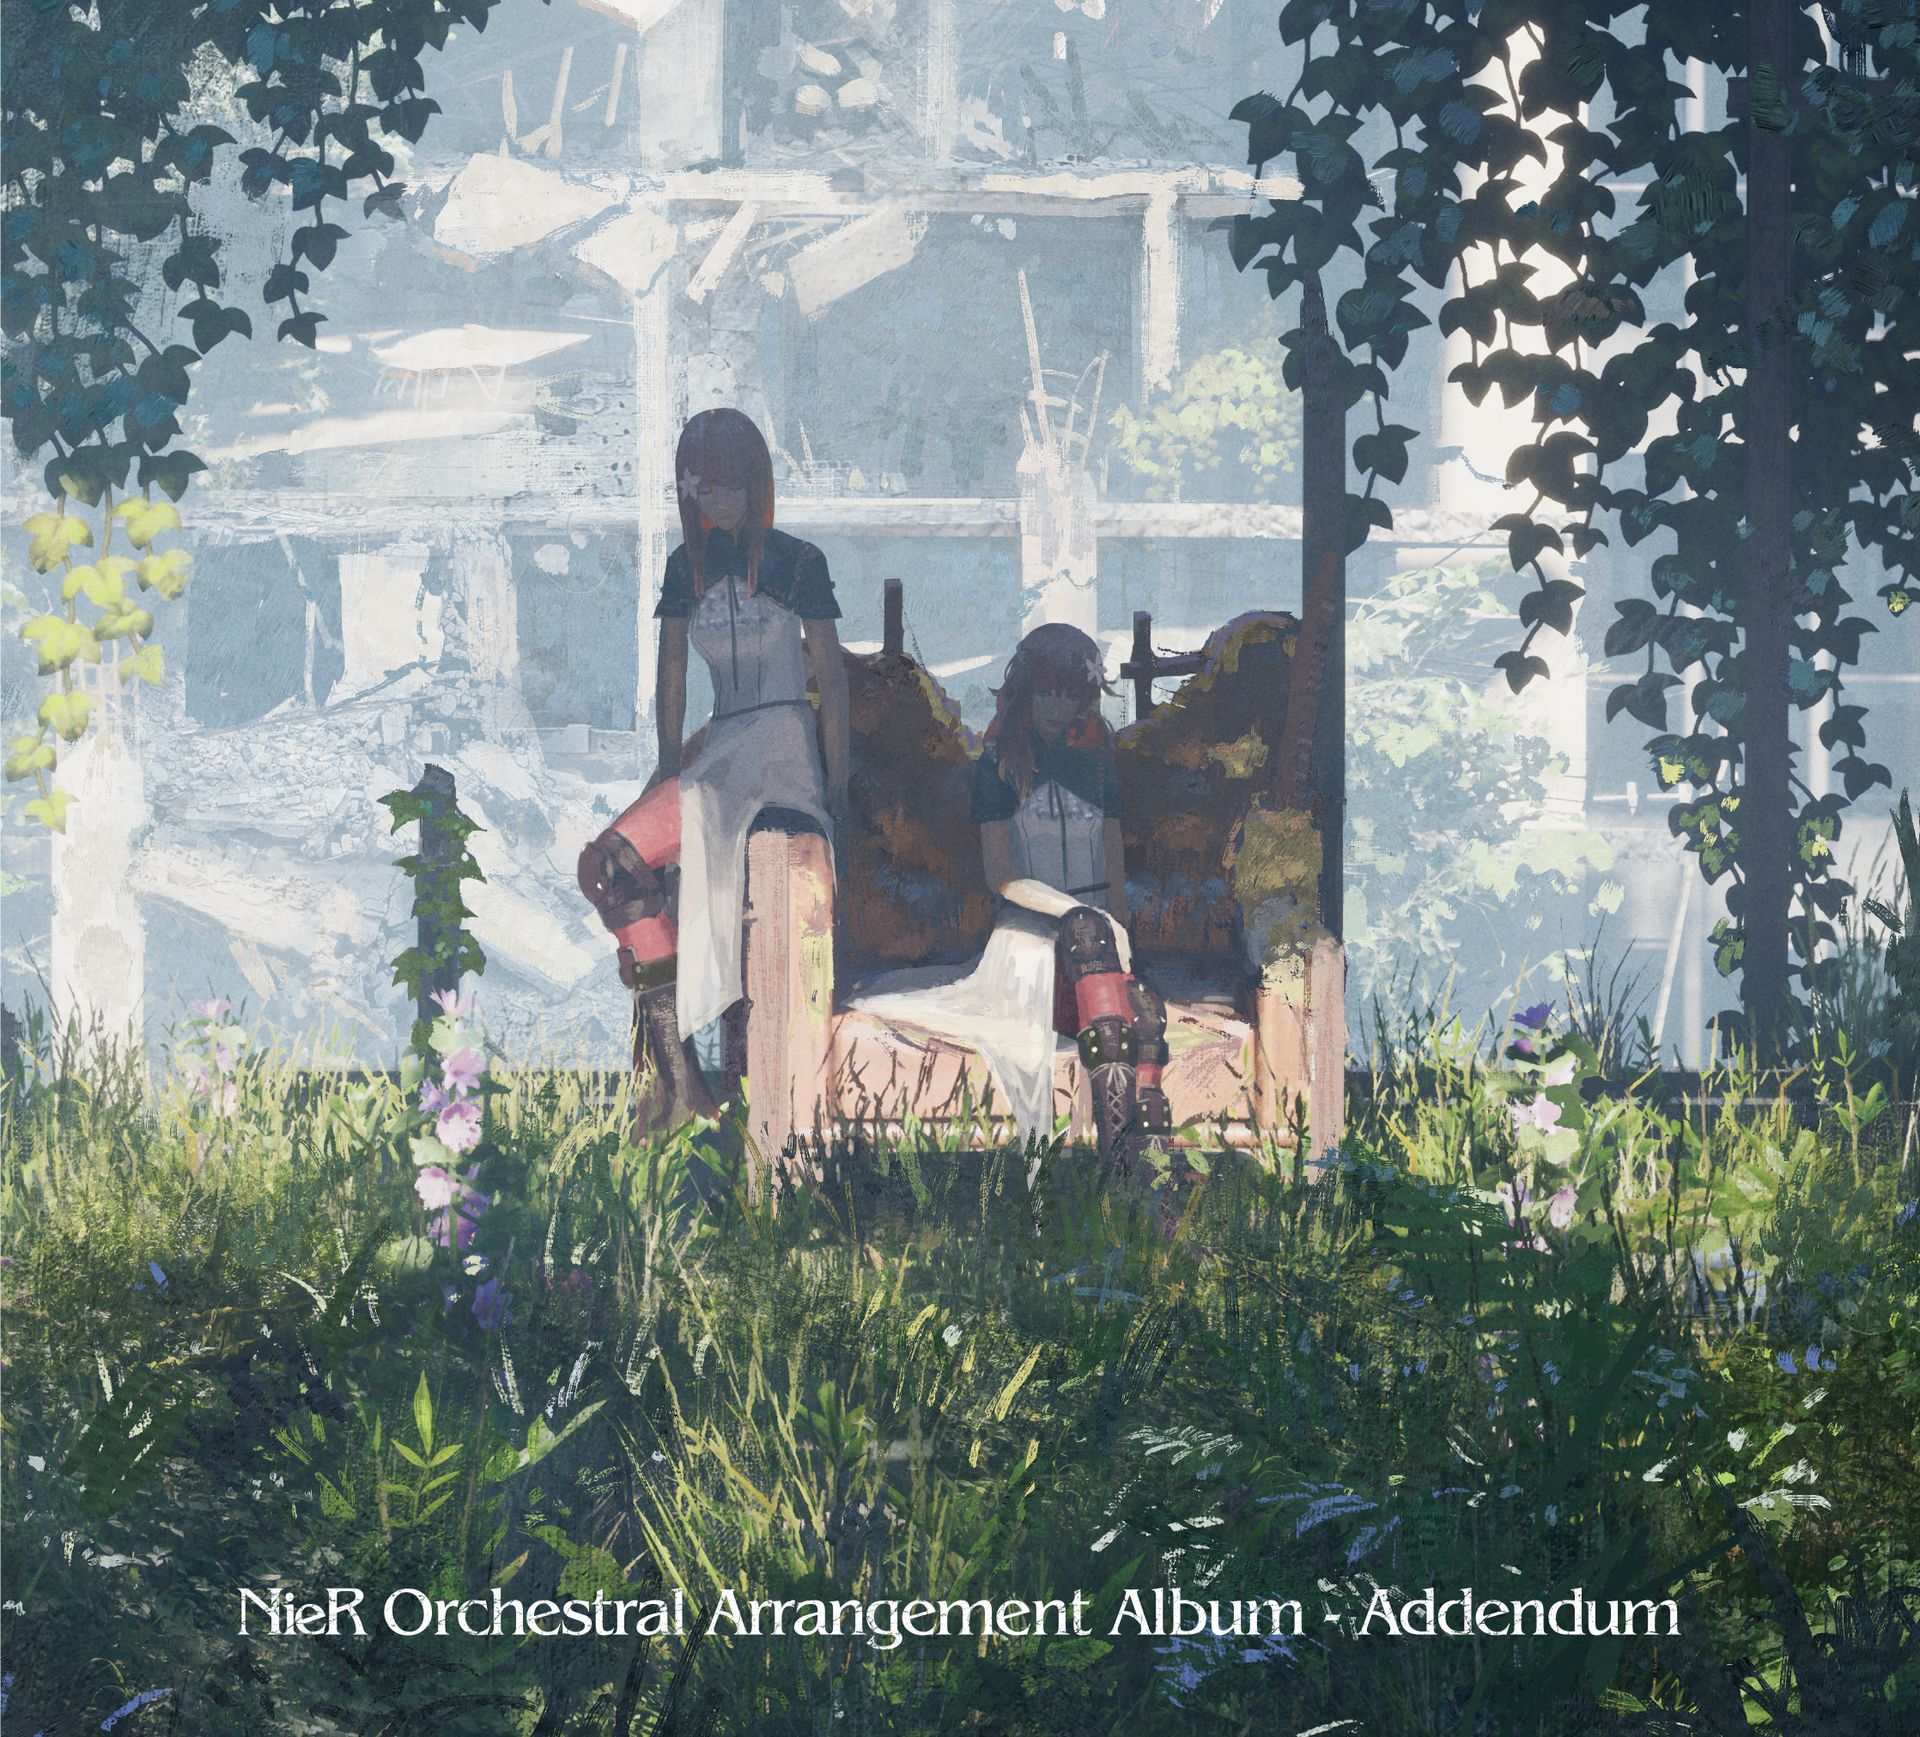 ニーア シリーズ10周年記念cd Nier Orchestral Arrangement Album Addendum 本日発売 Game Watch